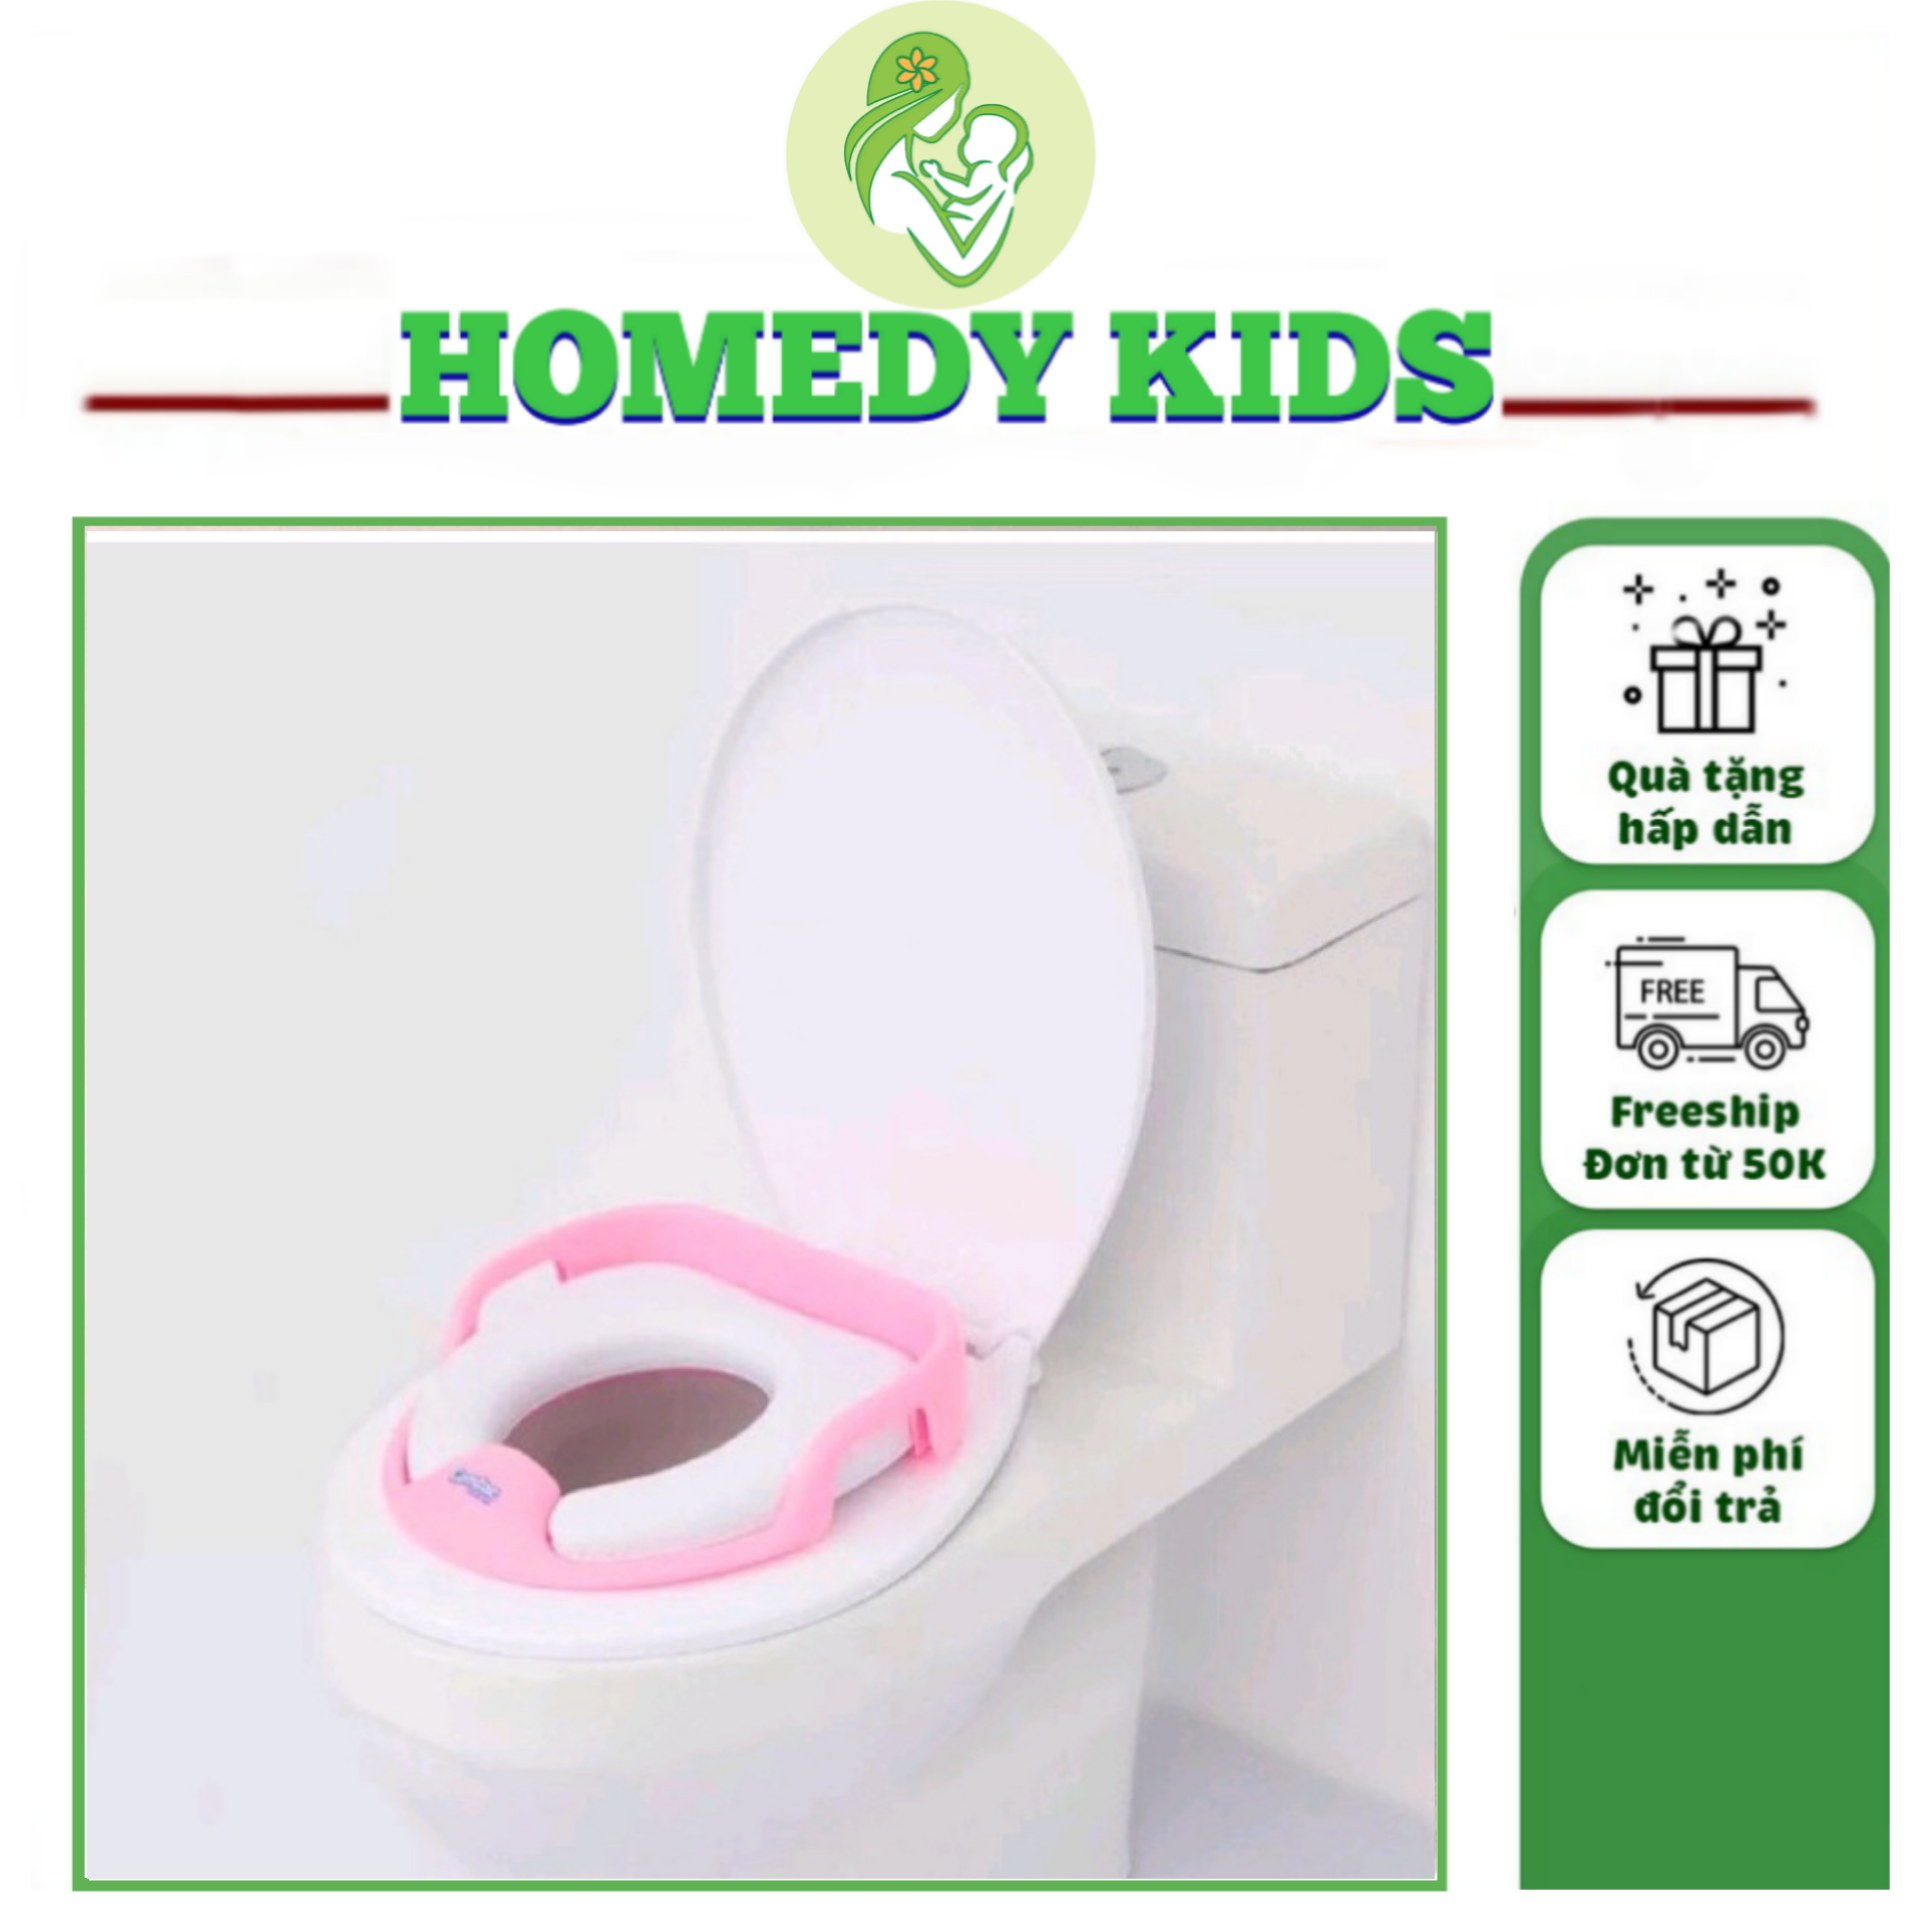 Bệ thu nhỏ bồn cầu cho bé - bệ ngồi toilet trẻ nhỏ